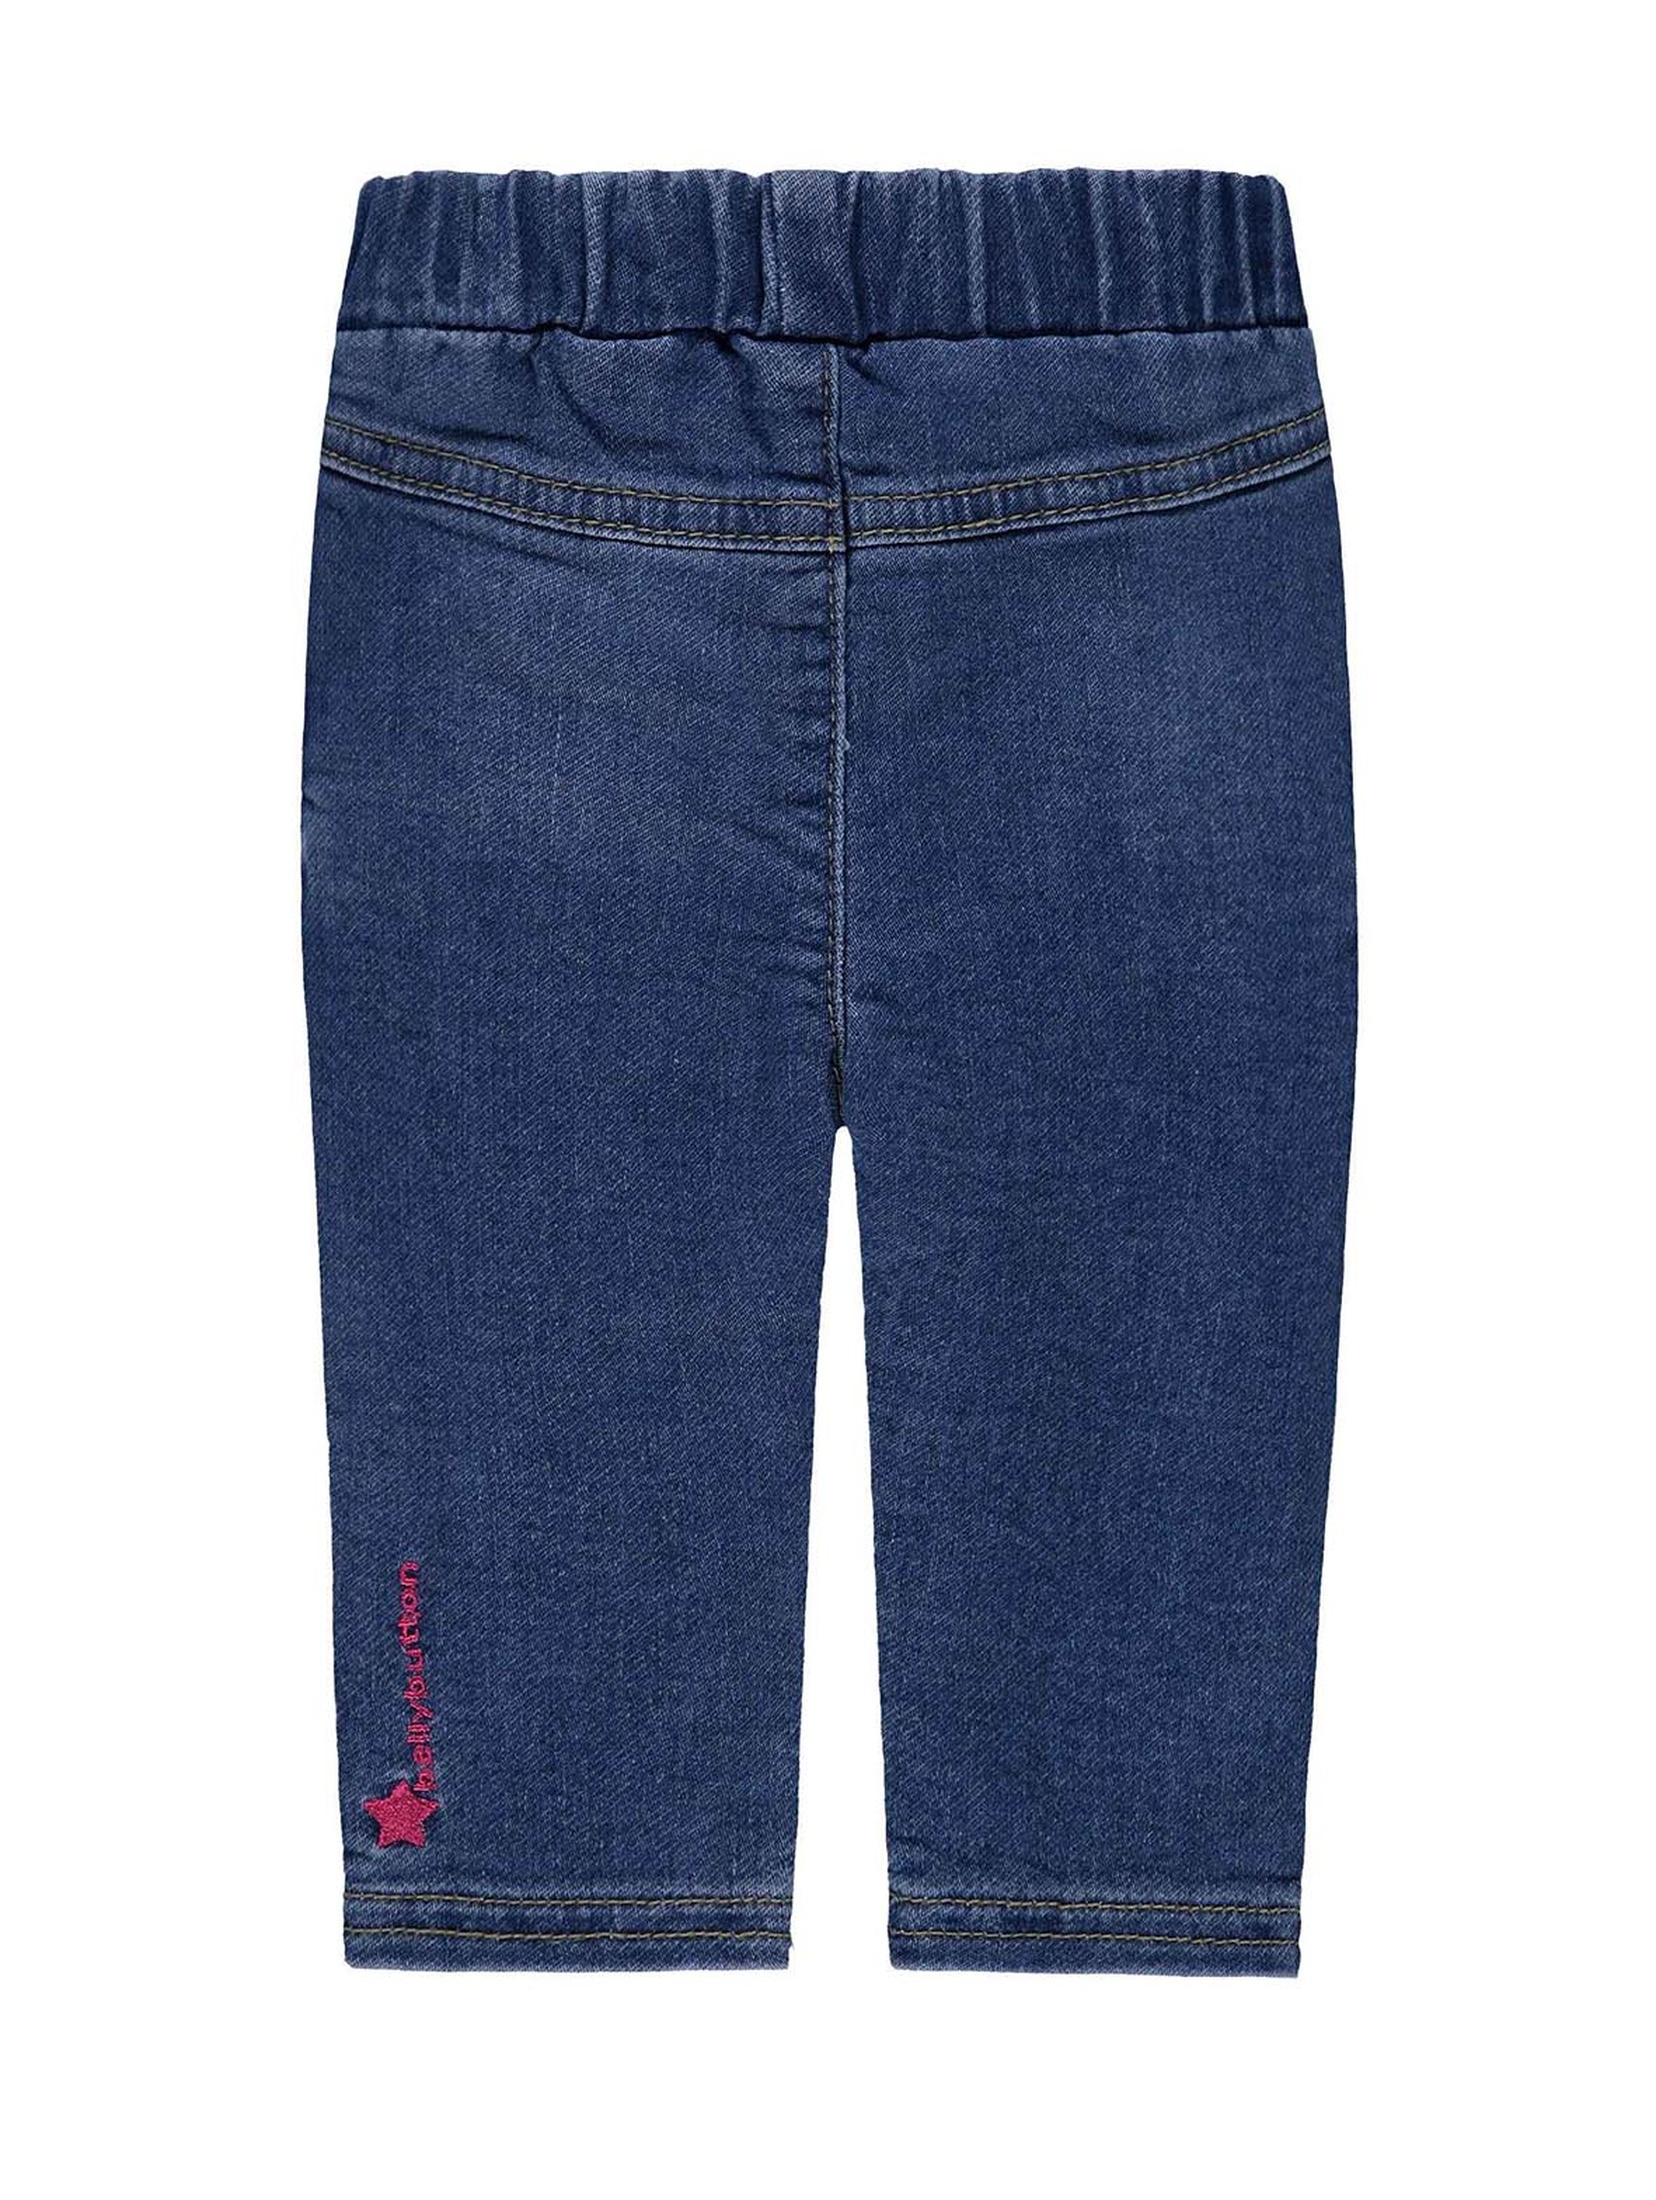 Spodnie jeansowe dziewczęce, niebieskie, bellybutton